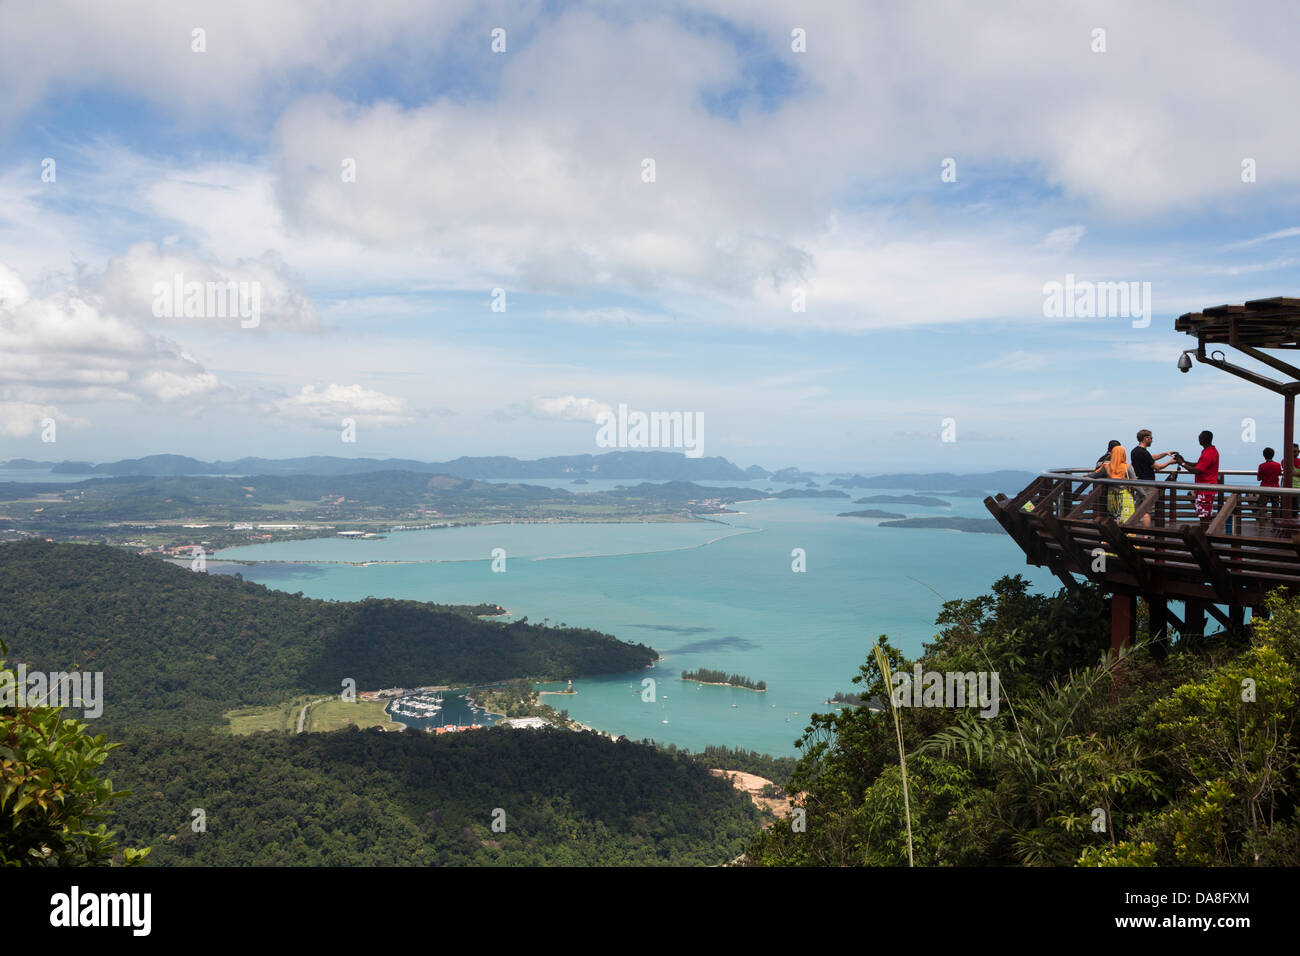 Les touristes profitant de la vue sur la mer d'Andaman pour la plate-forme d'observation, la Malaisie Langkawi Banque D'Images